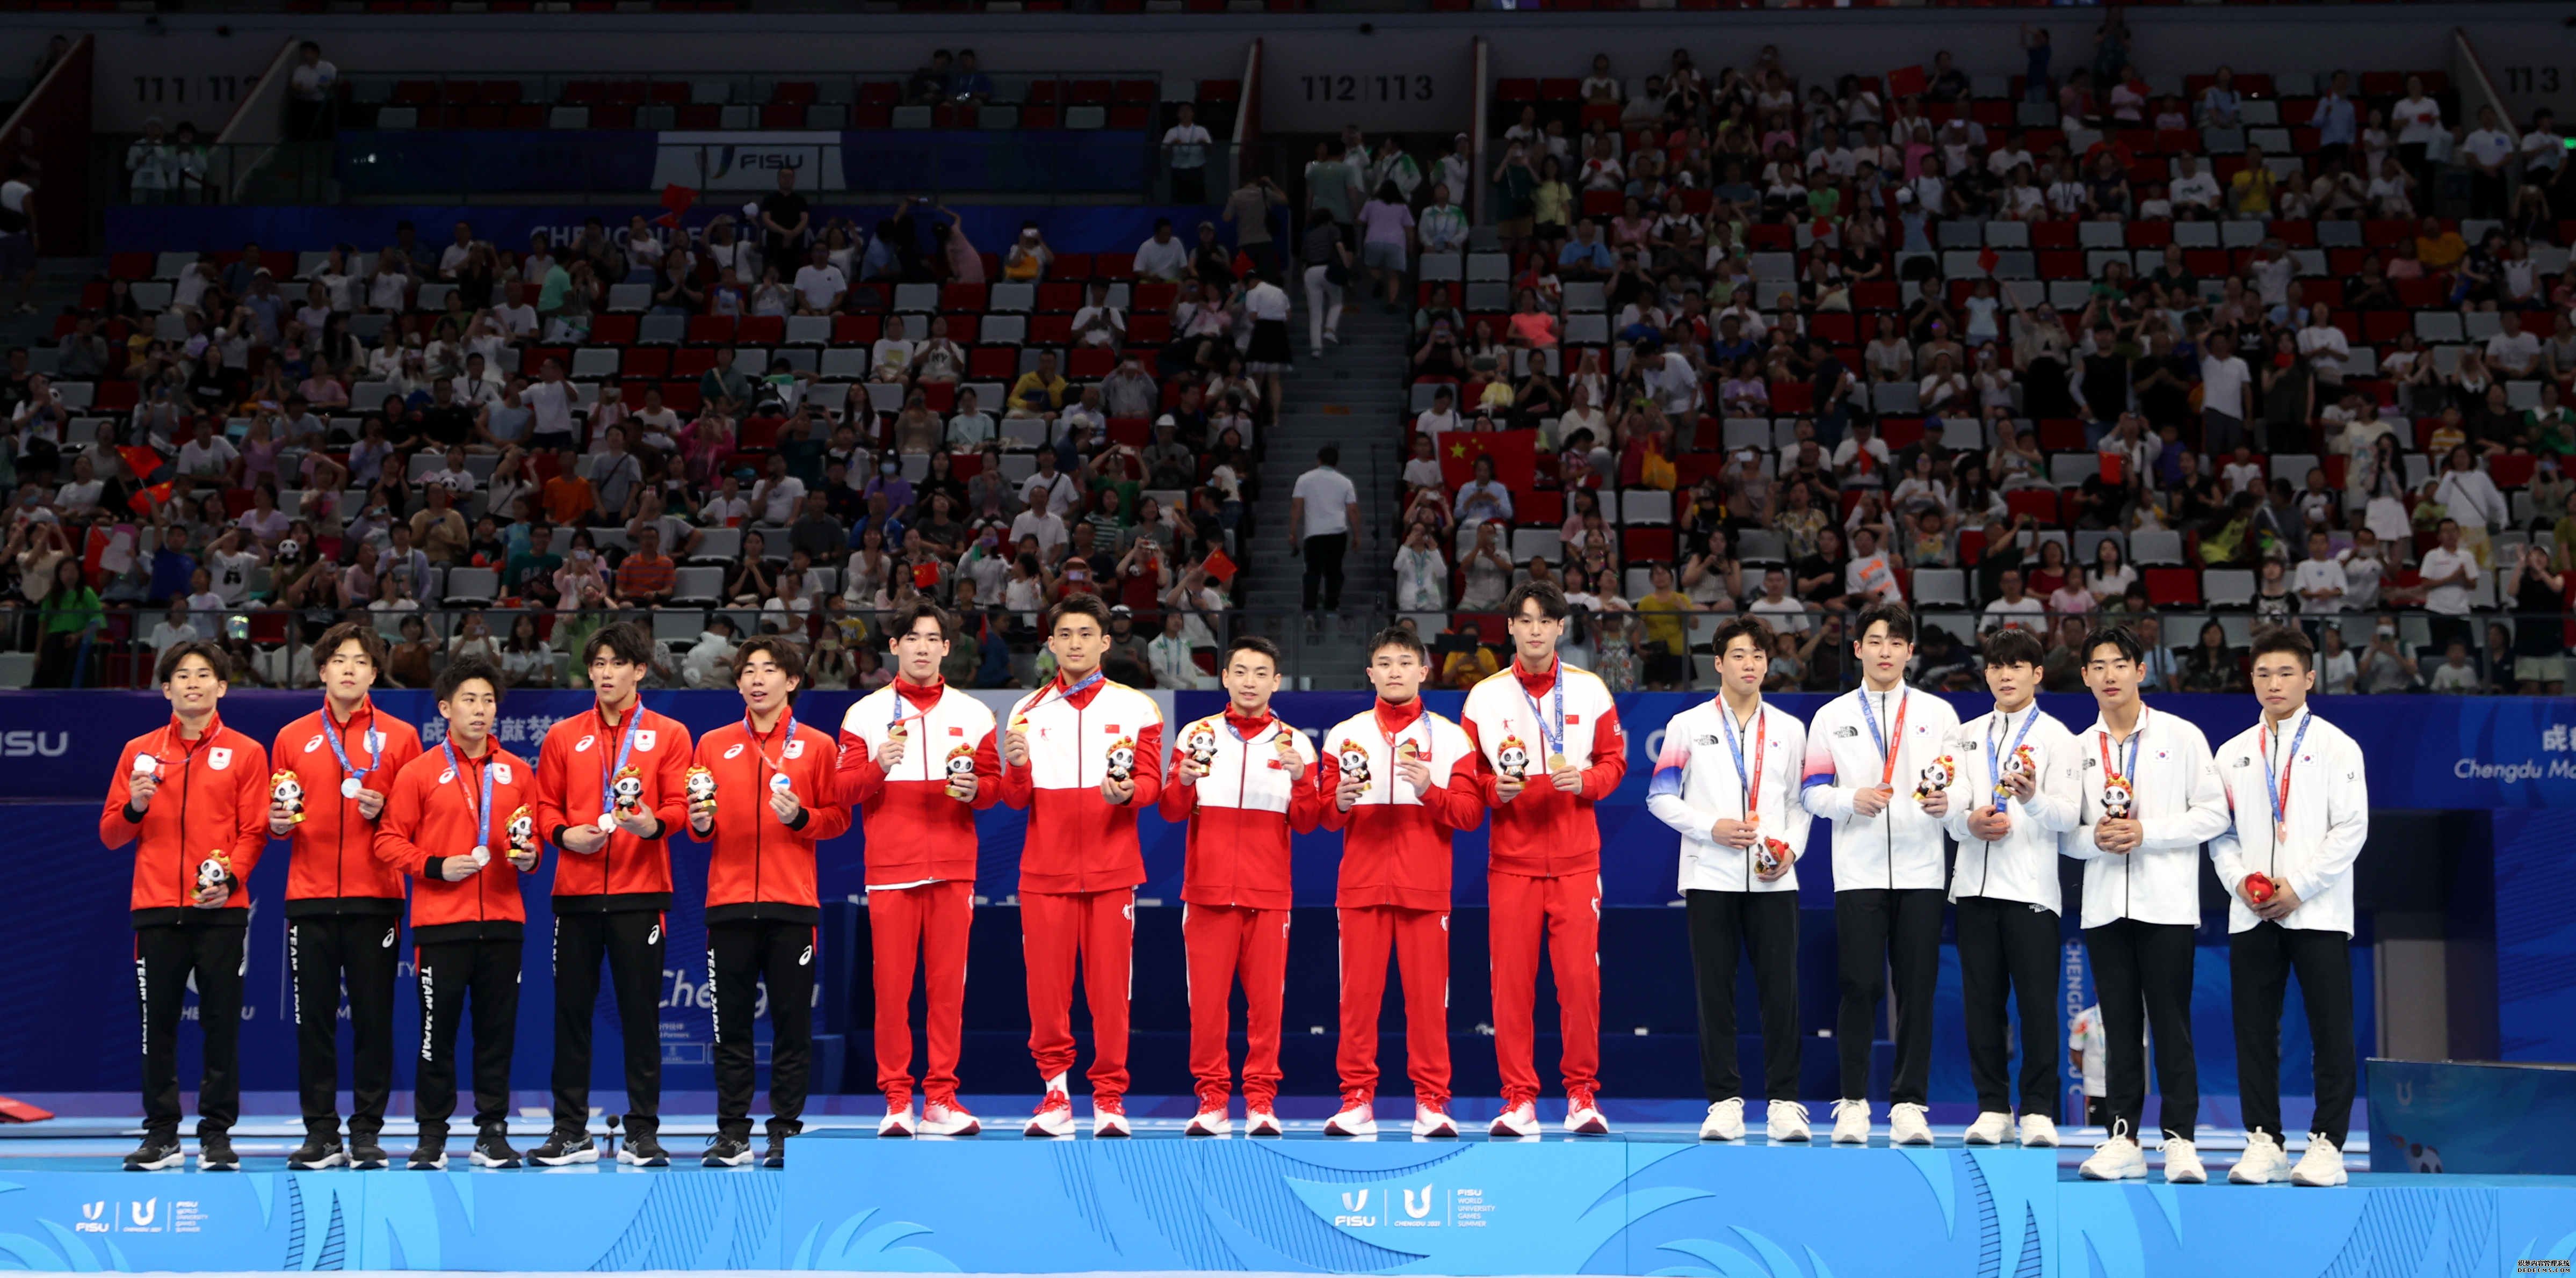 8月2日，冠军中国队（中）、亚军日本队（左）和季军韩国队在领奖台上合影。 当日，在成都举行的第31届世界大学生夏季运动会体操项目男子团体决赛中，中国队以262.594分的总成绩获得冠军。 新华社记者 张丽芸 摄